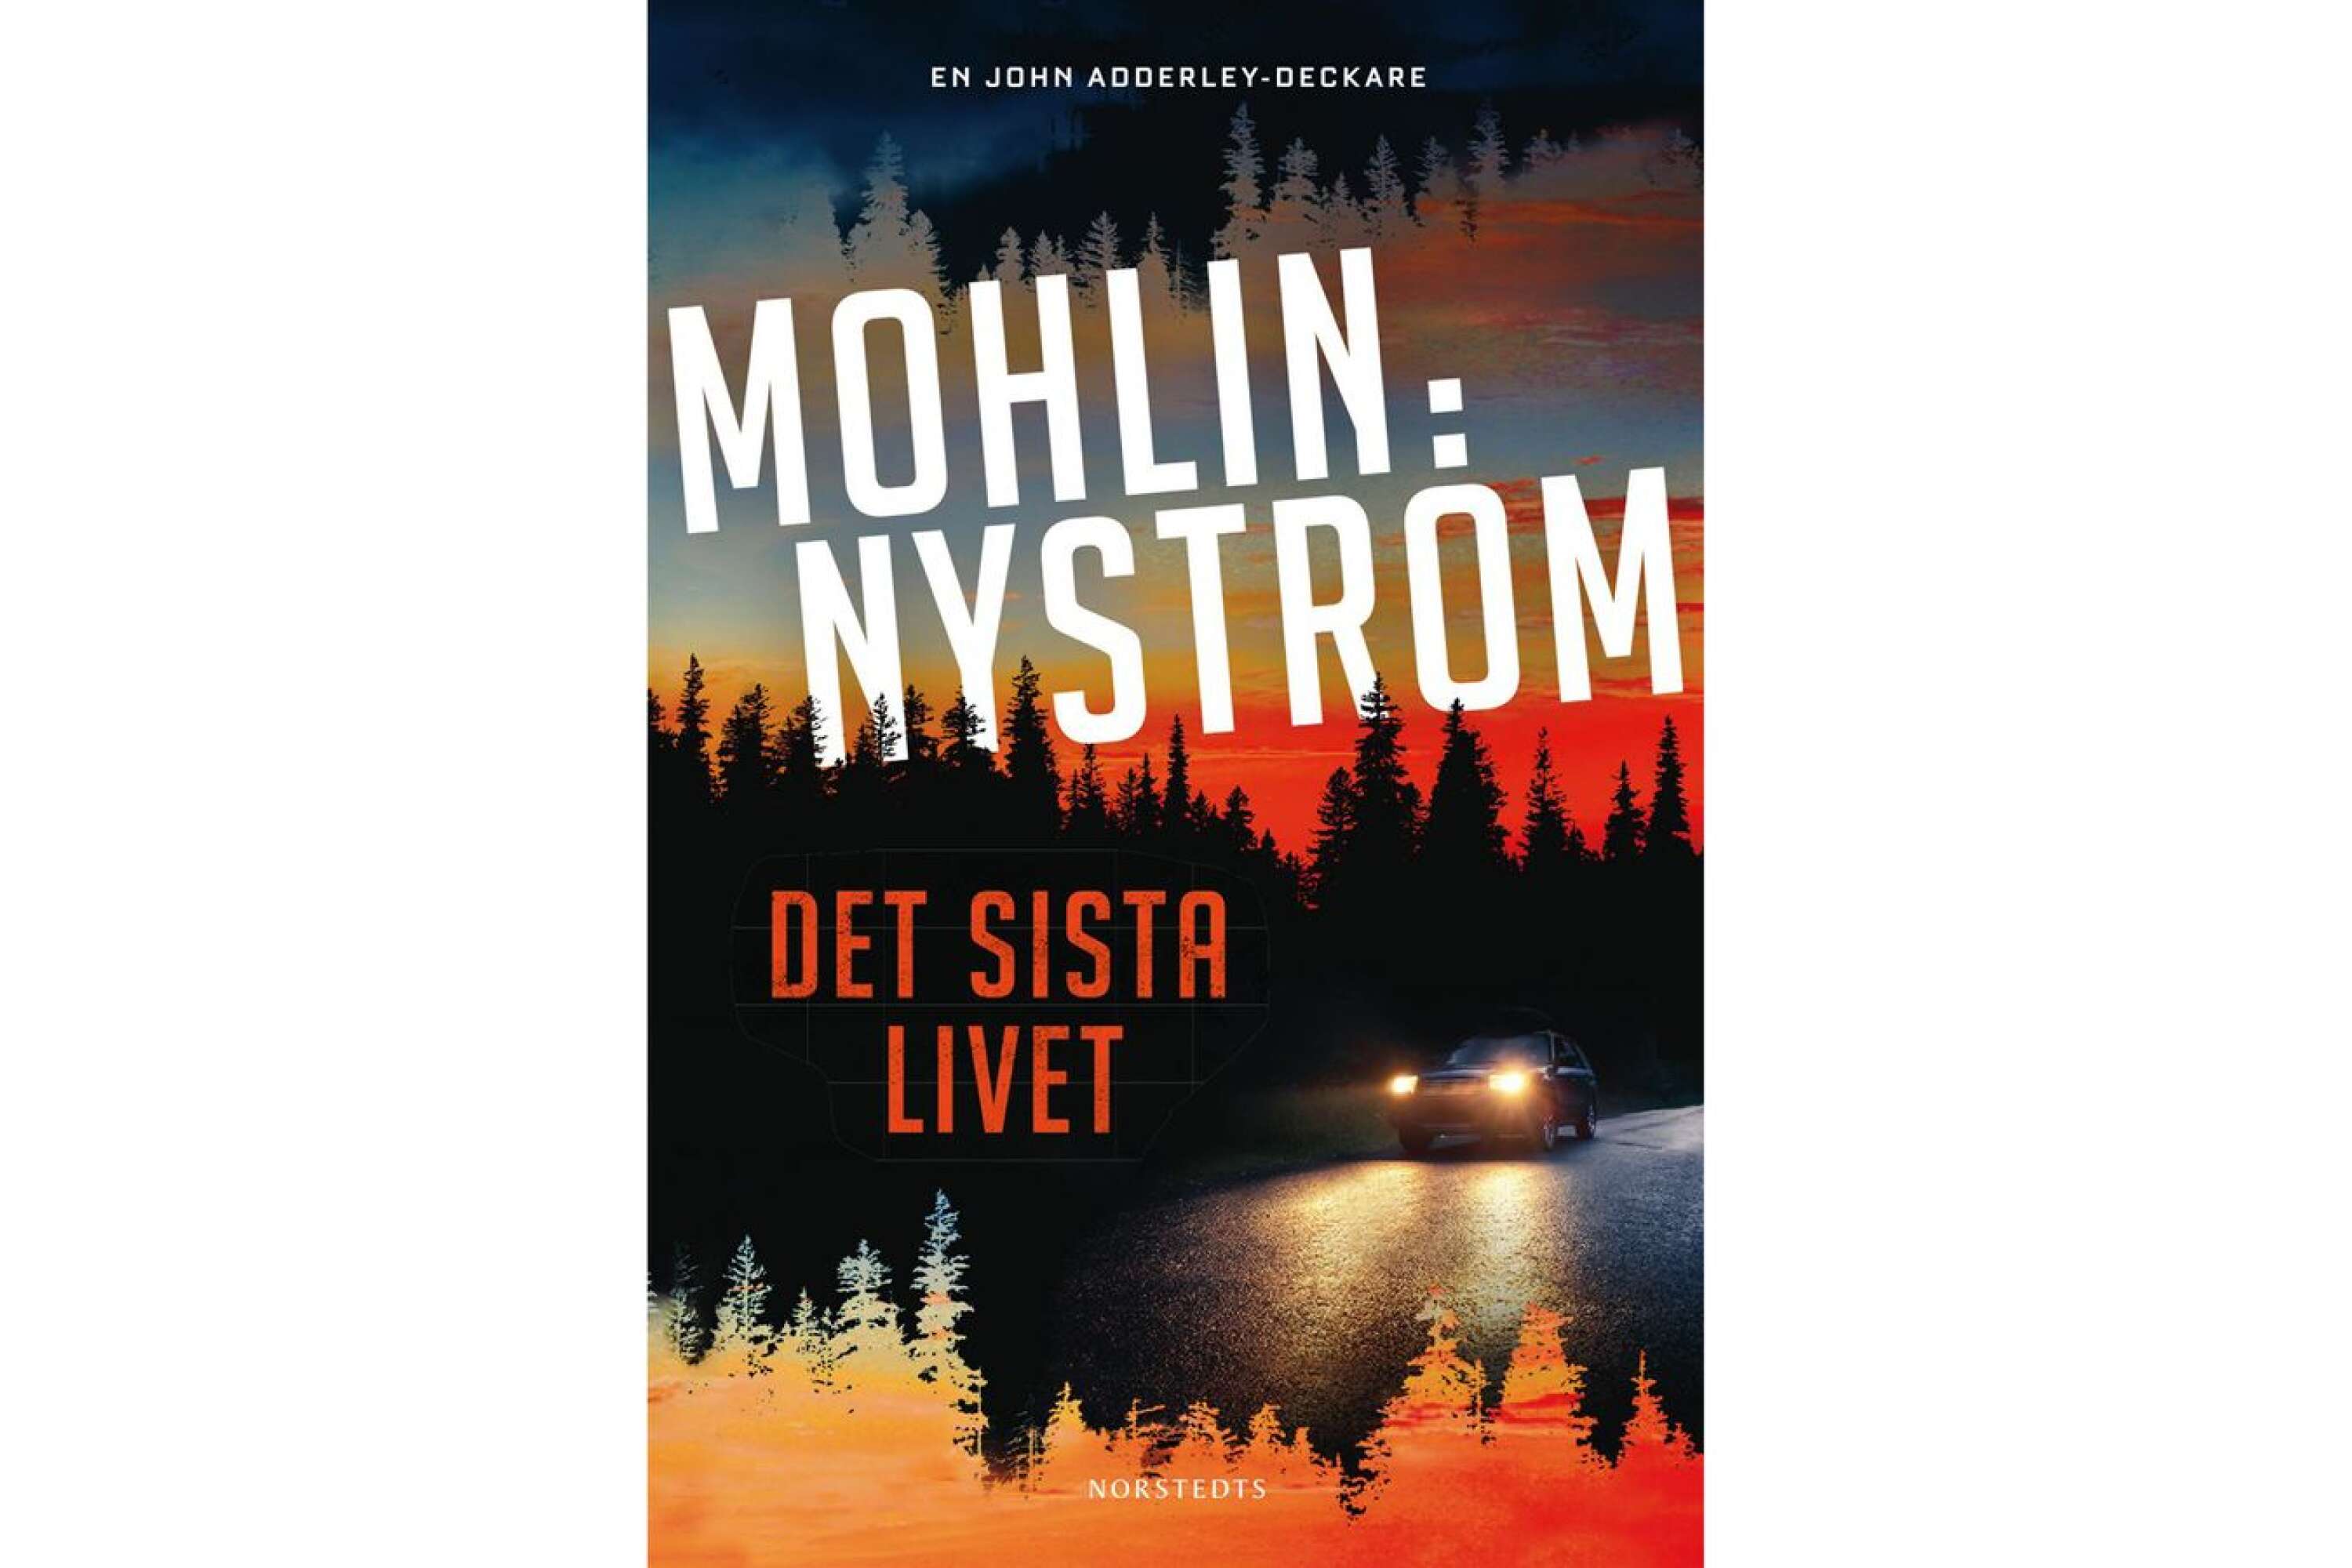 Det sista livet av Peter Mohlin och Peter Nyström.